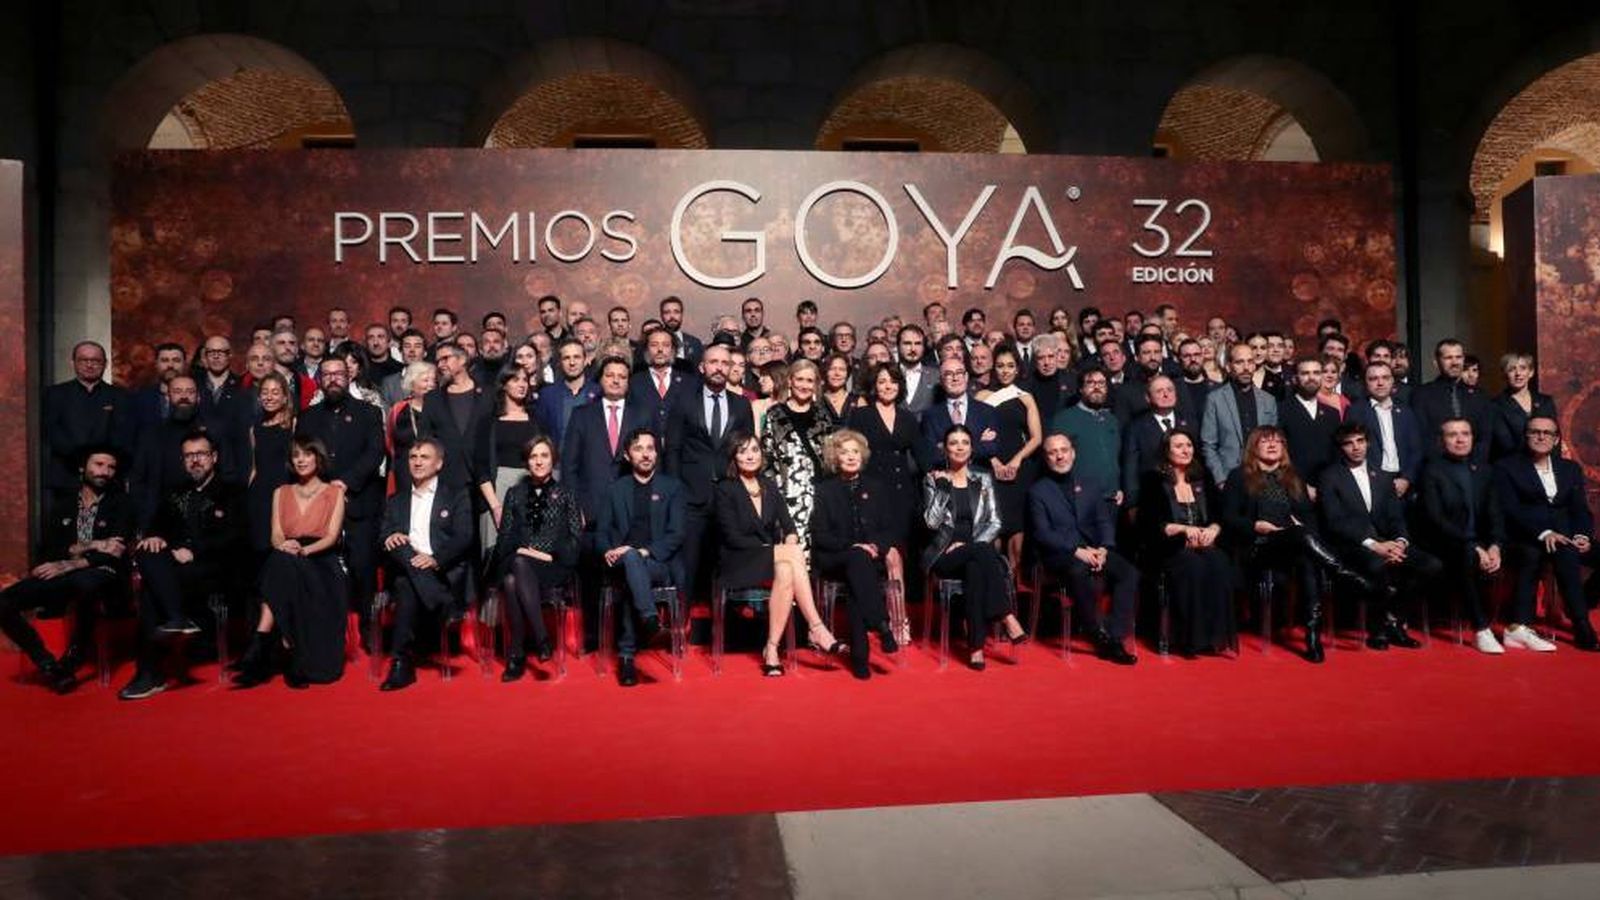 Foto: Fiesta de los nominados a los Premios Goya 2018. (EFE)